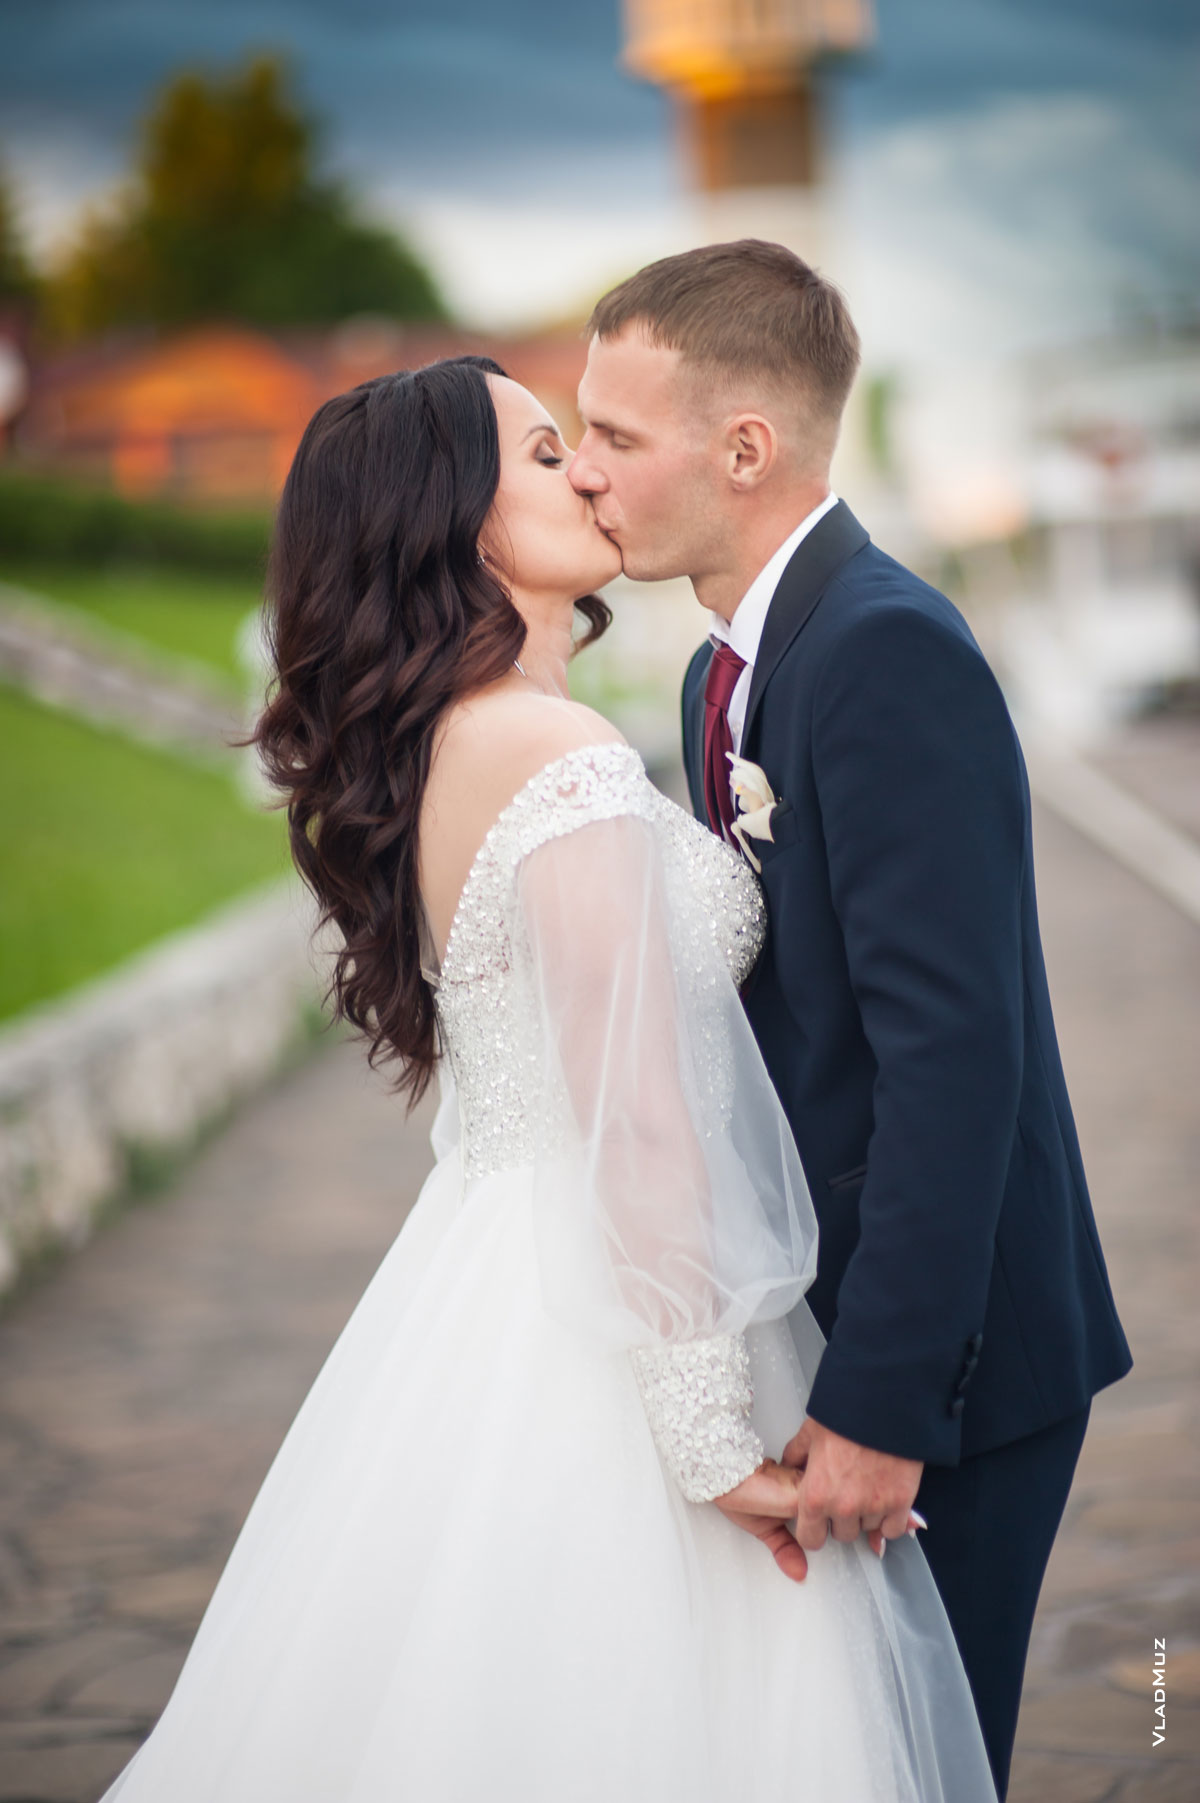 Заключительное фото свадебной прогулки: свадебный поцелуй молодоженов